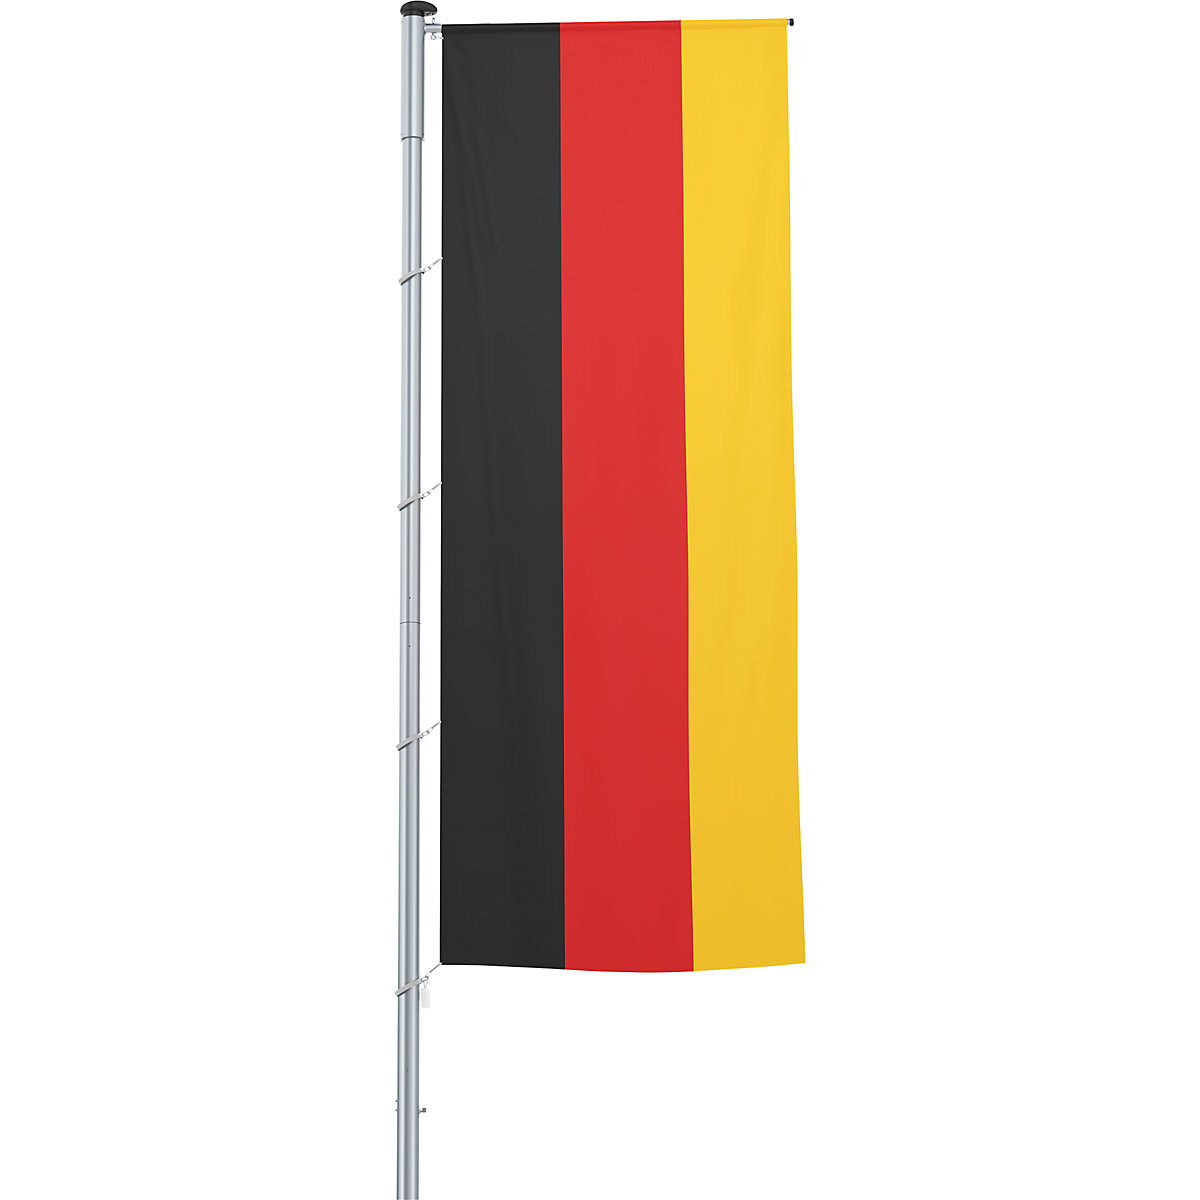 Mastvlag/landvlag – Mannus, formaat 1,2 x 3 m, Duitsland-26